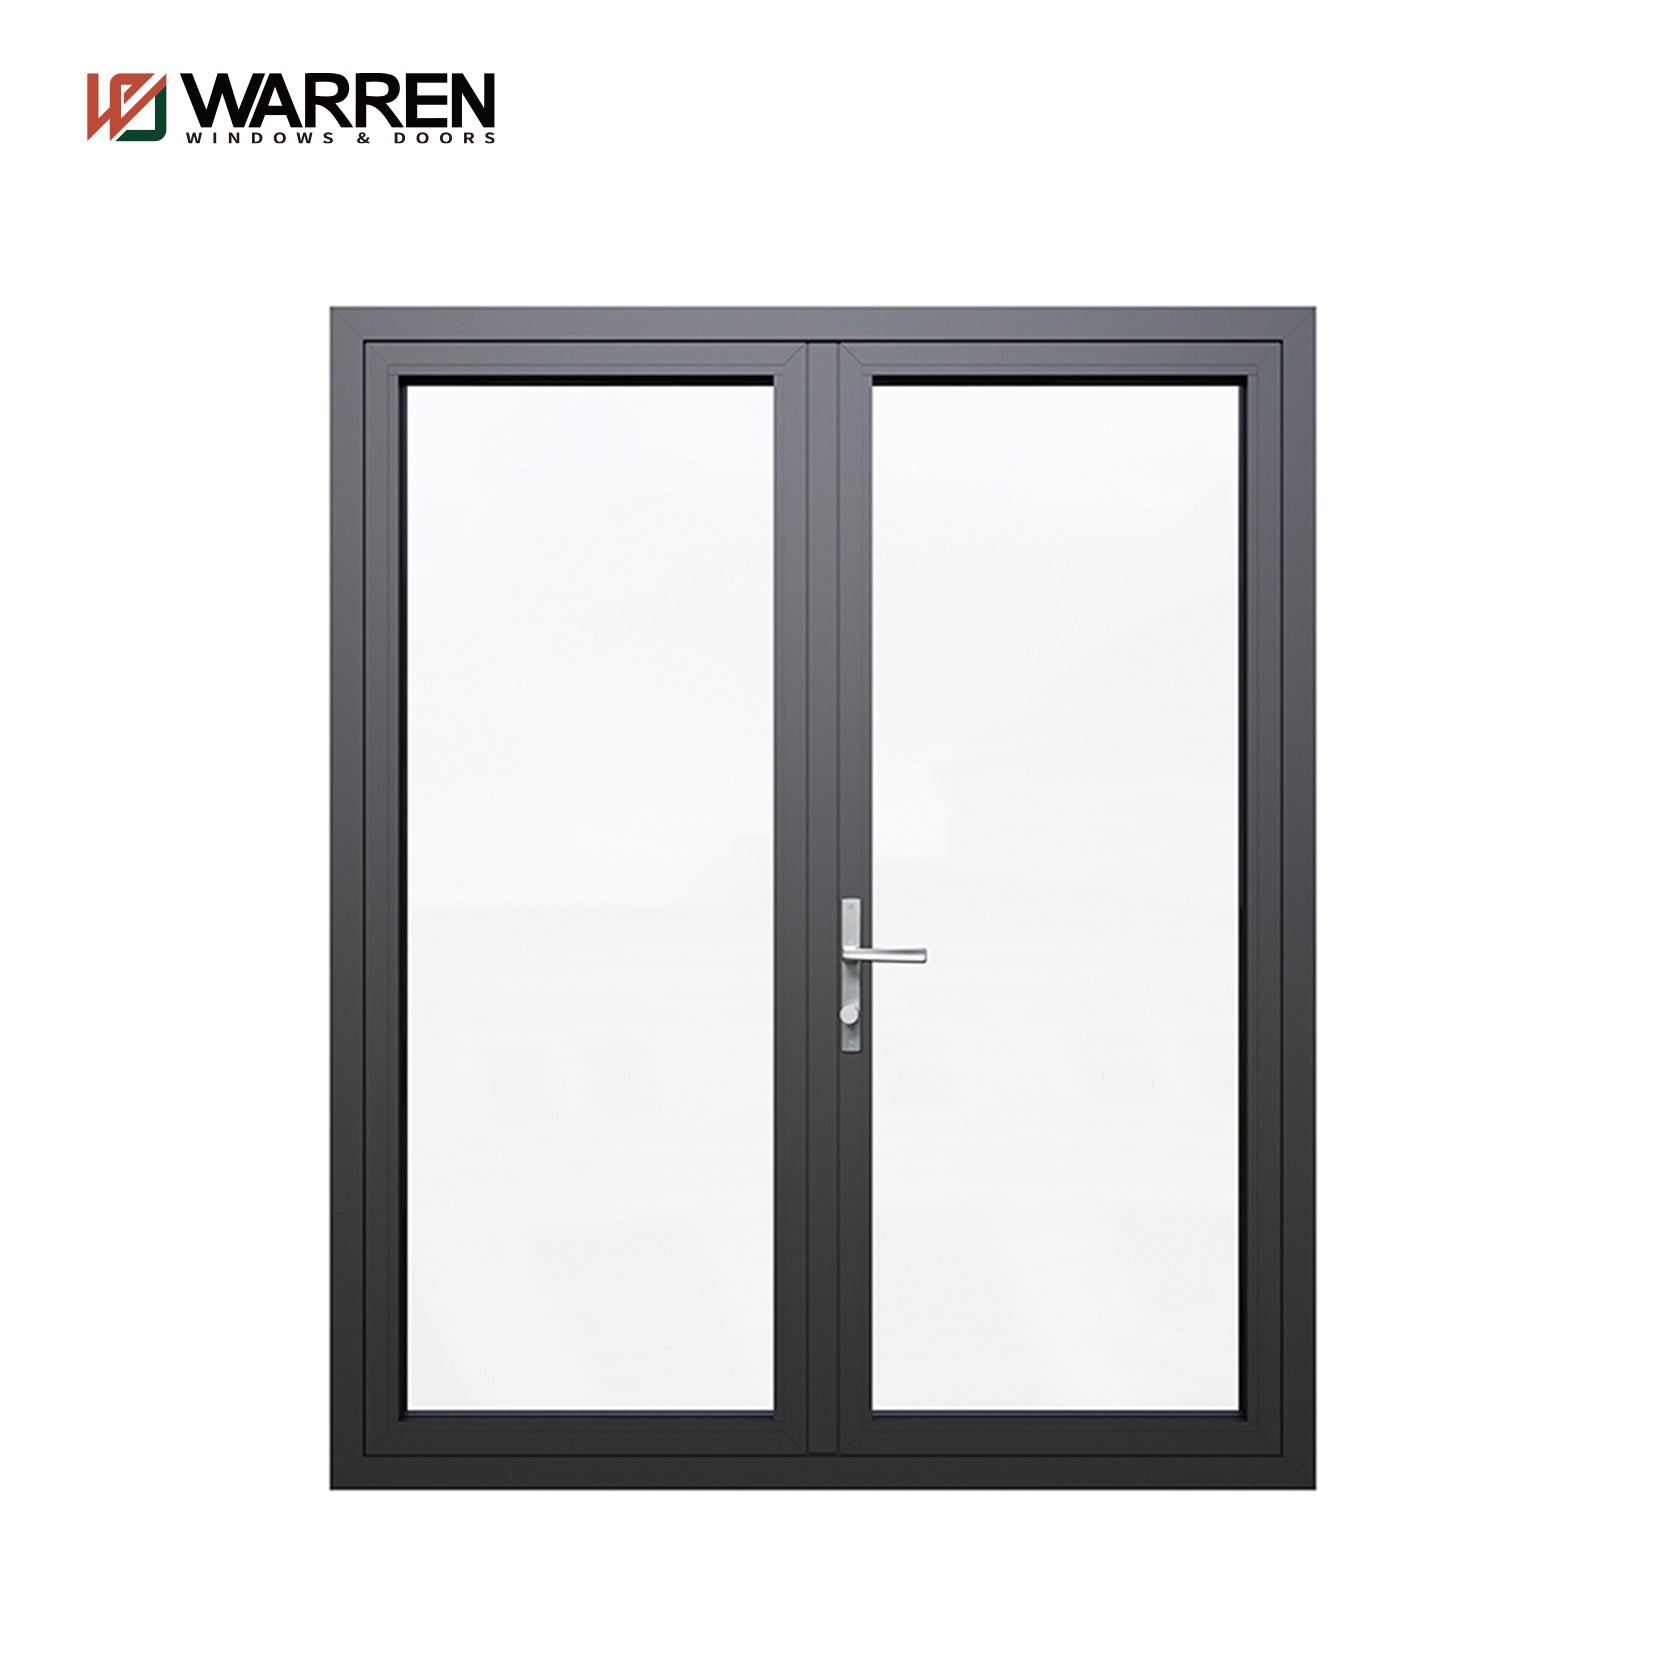 Warren 48 Inch Glass French Doors With Interior Double Office Doors